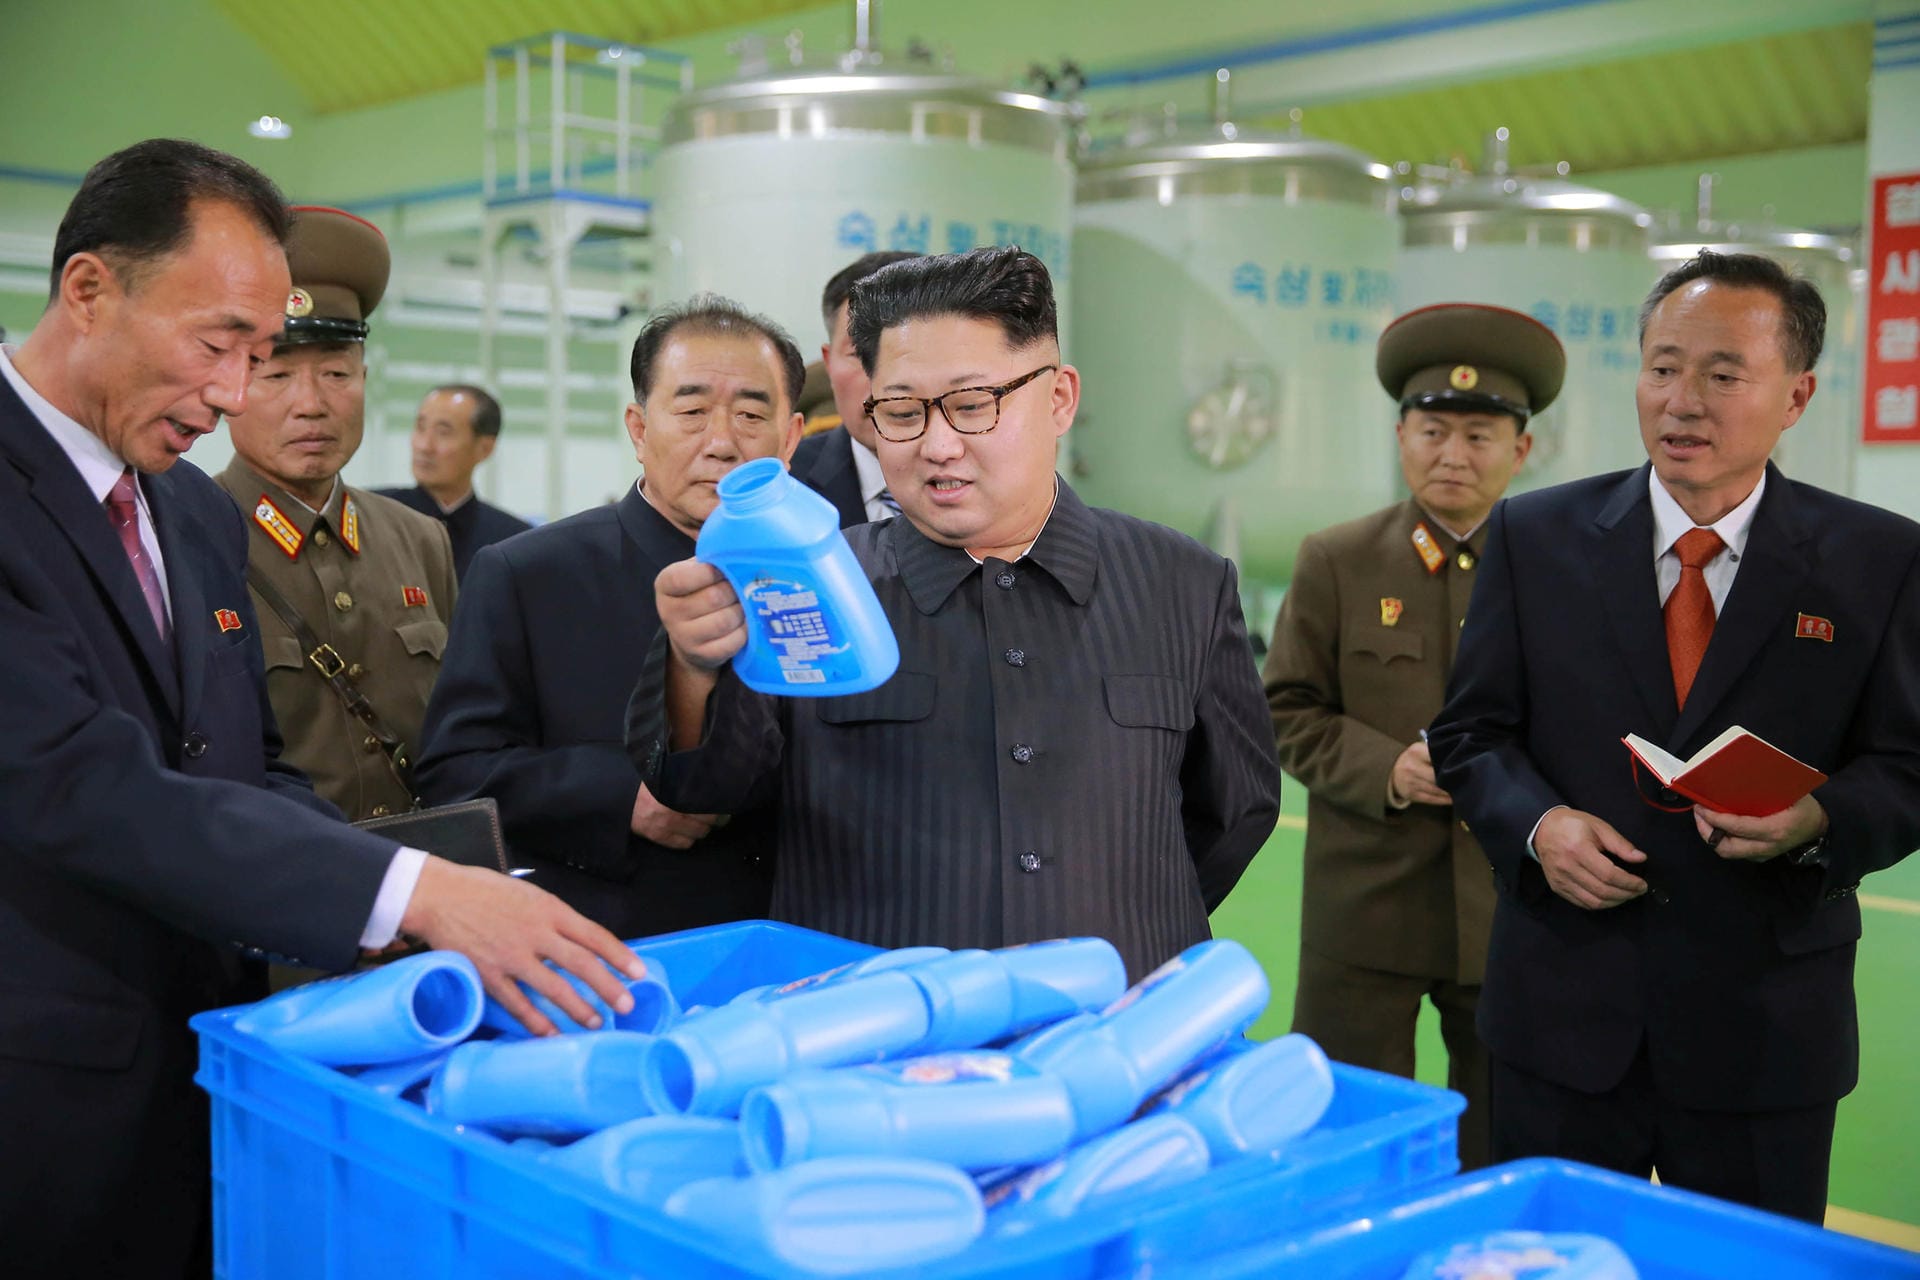 Kim zeigt sich gerne mit Produkten aus den volkseigenen Betrieben seines Landes. Hier zum Beispiel mit Seife. Die Botschaft: Der Wirtschaft geht es gut, das Land produziert.